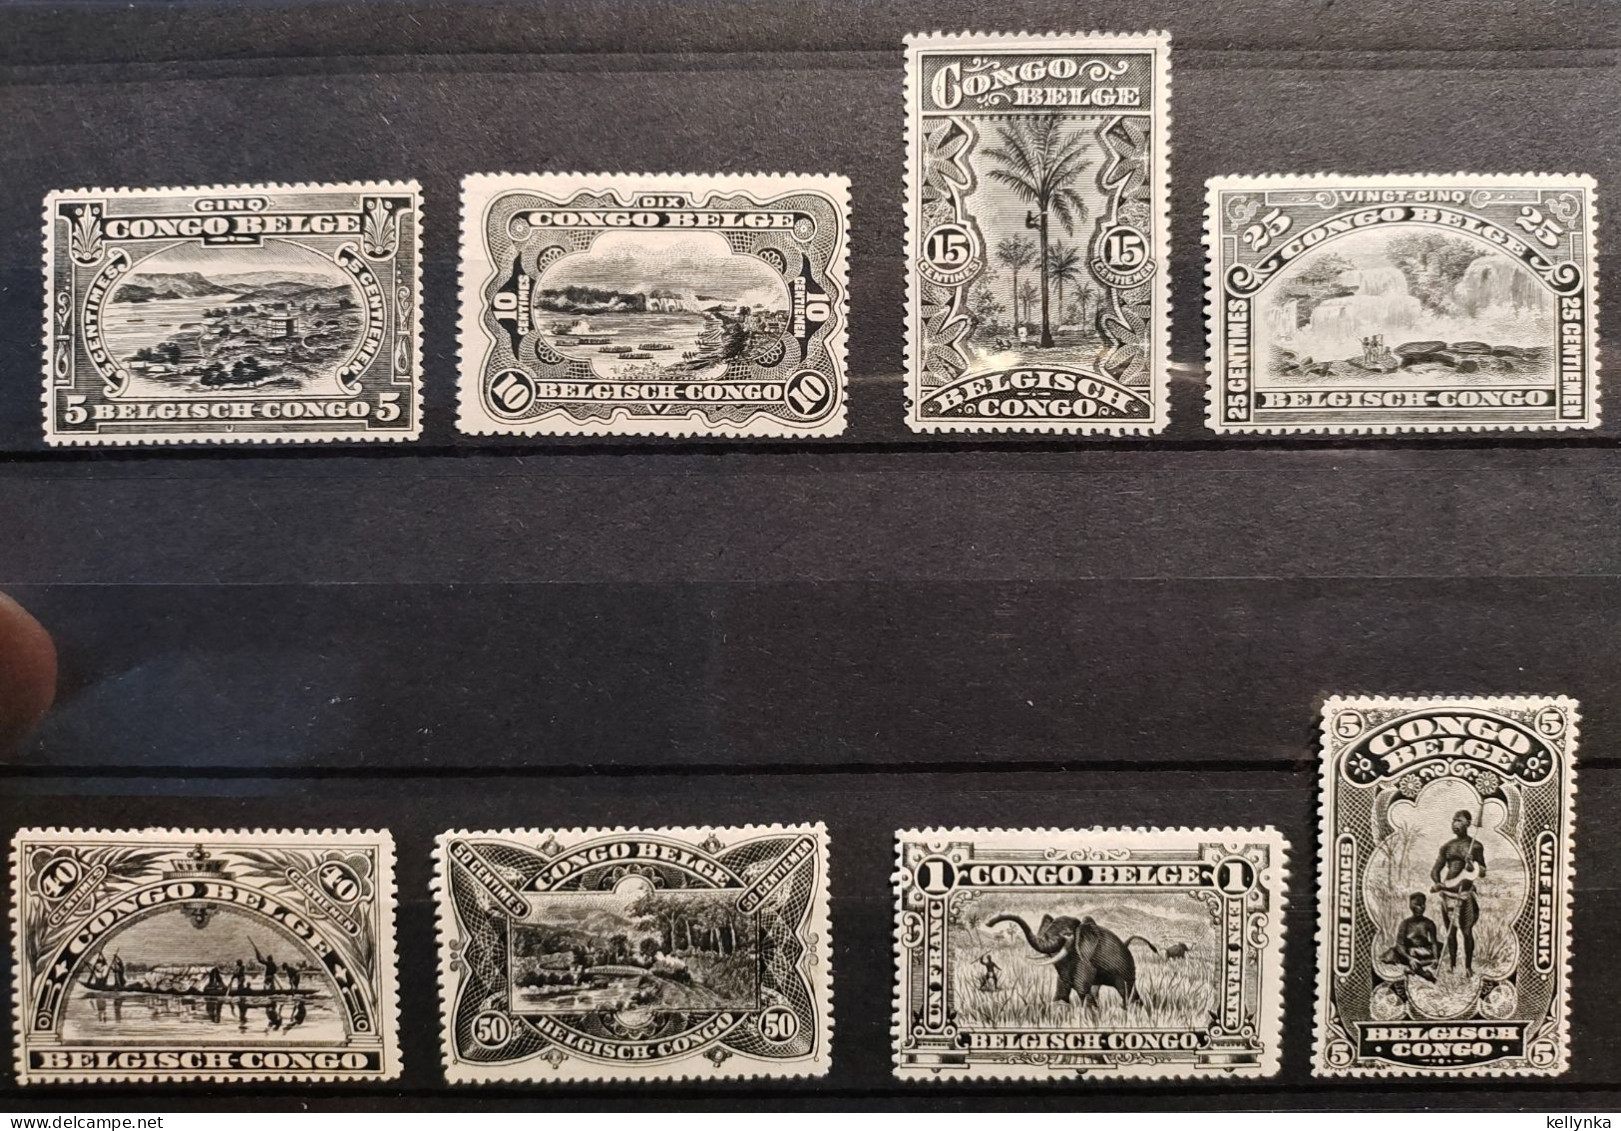 Congo Belge - 64/71 - Tirage En Noir Et Blanc - 1915 - MH - Unused Stamps